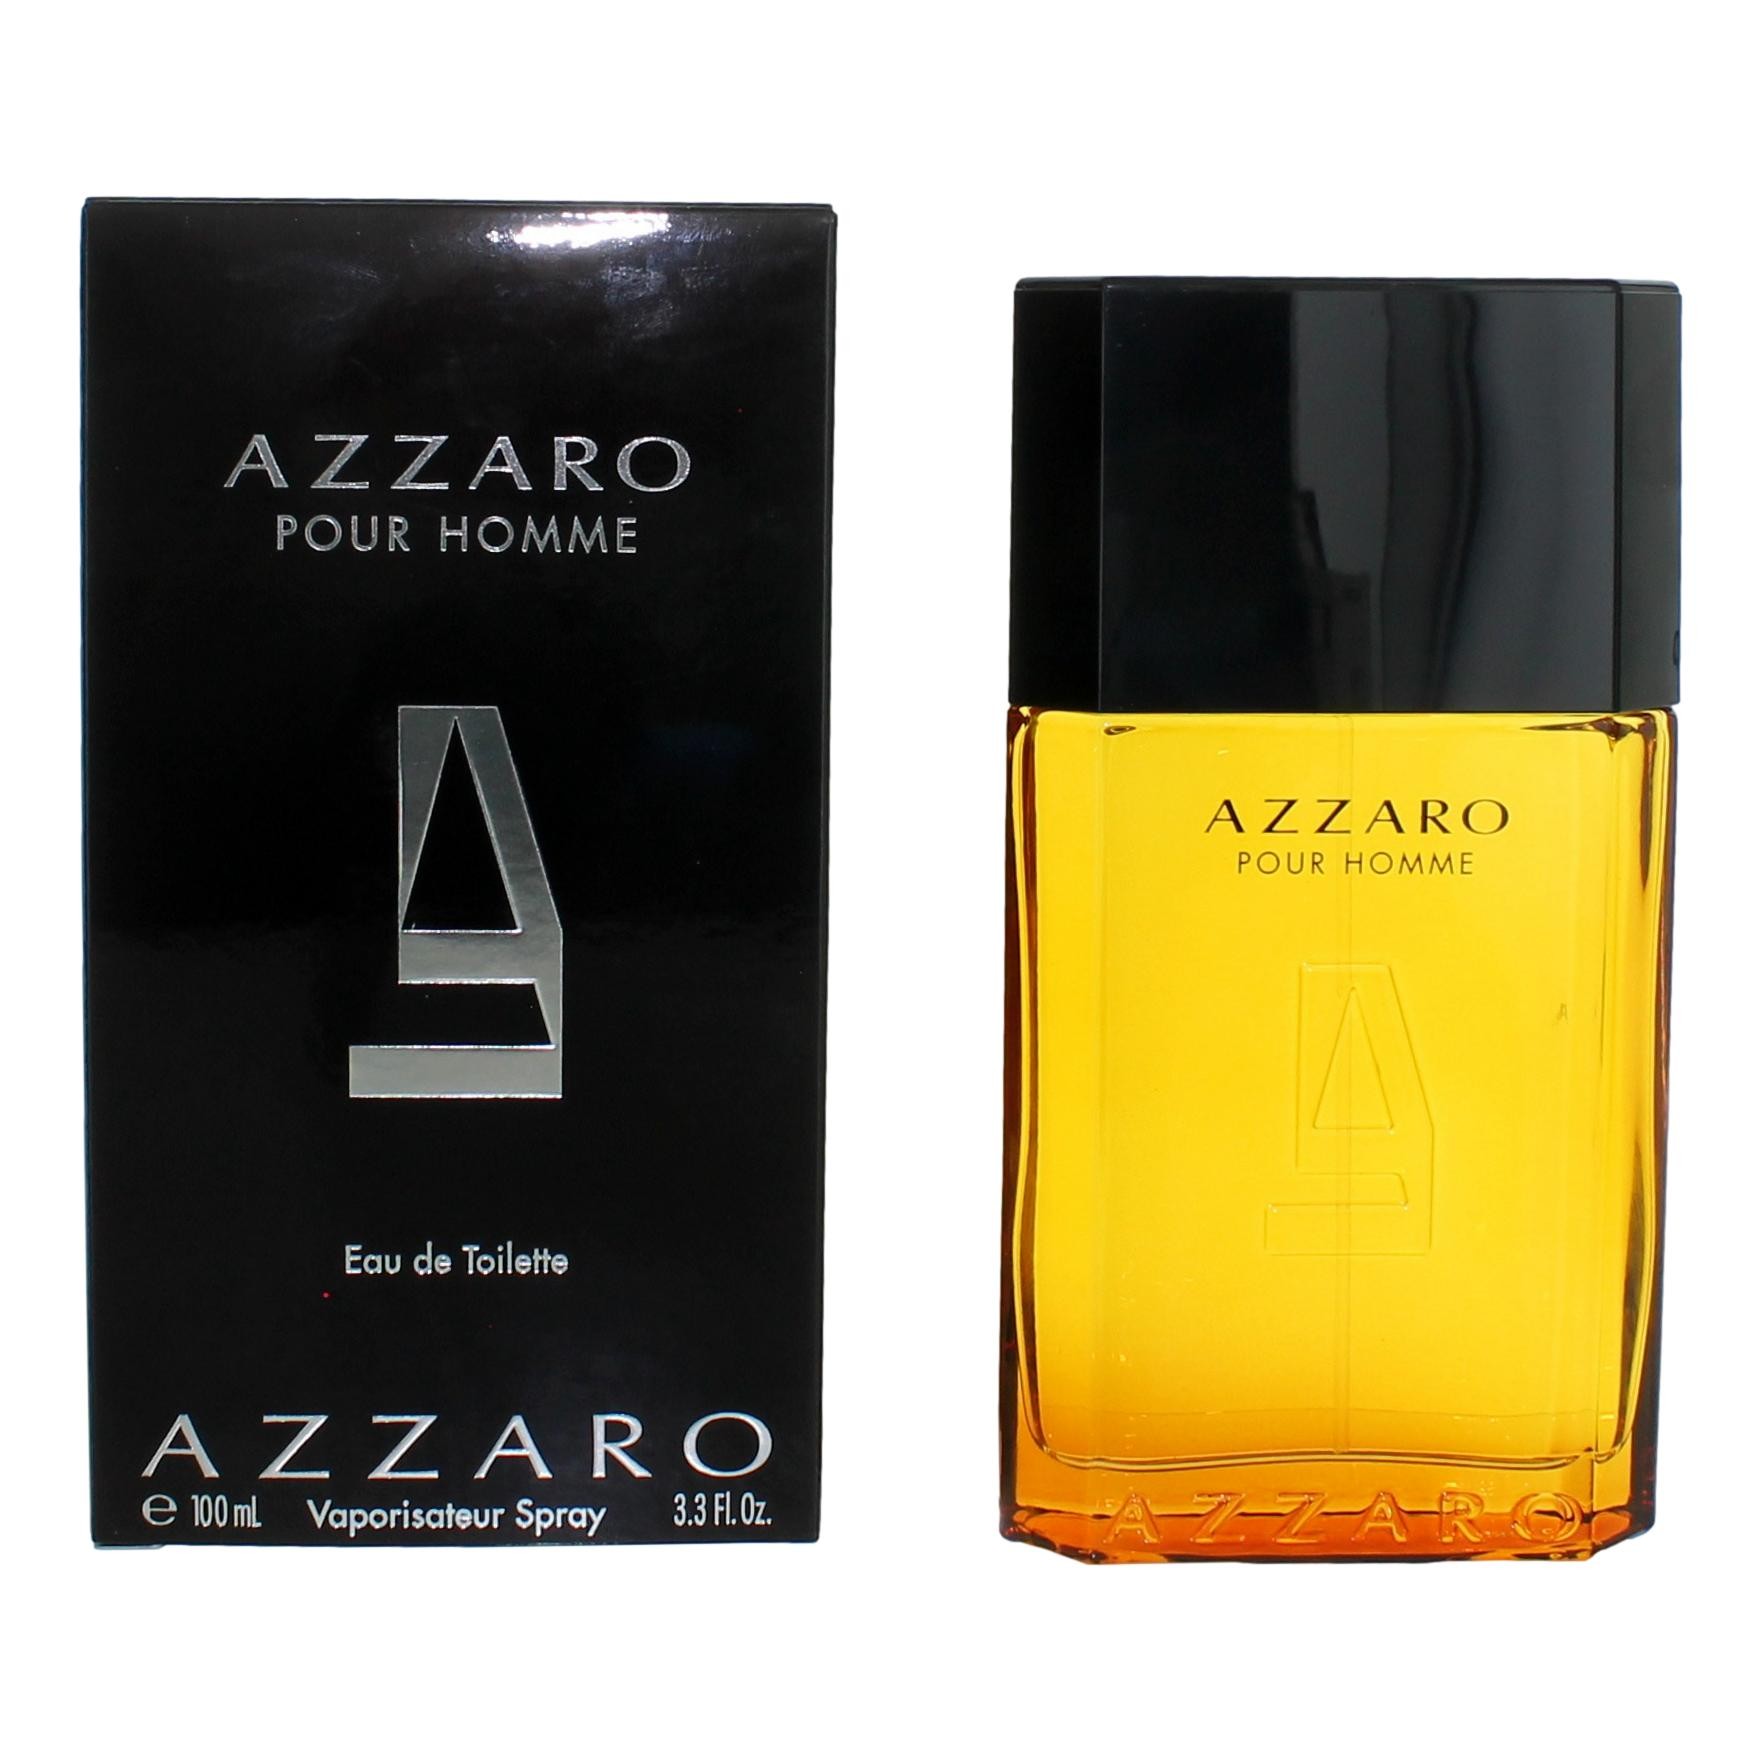 Azzaro by Azzaro 3.3 oz Eau De Toilette Spray for Men